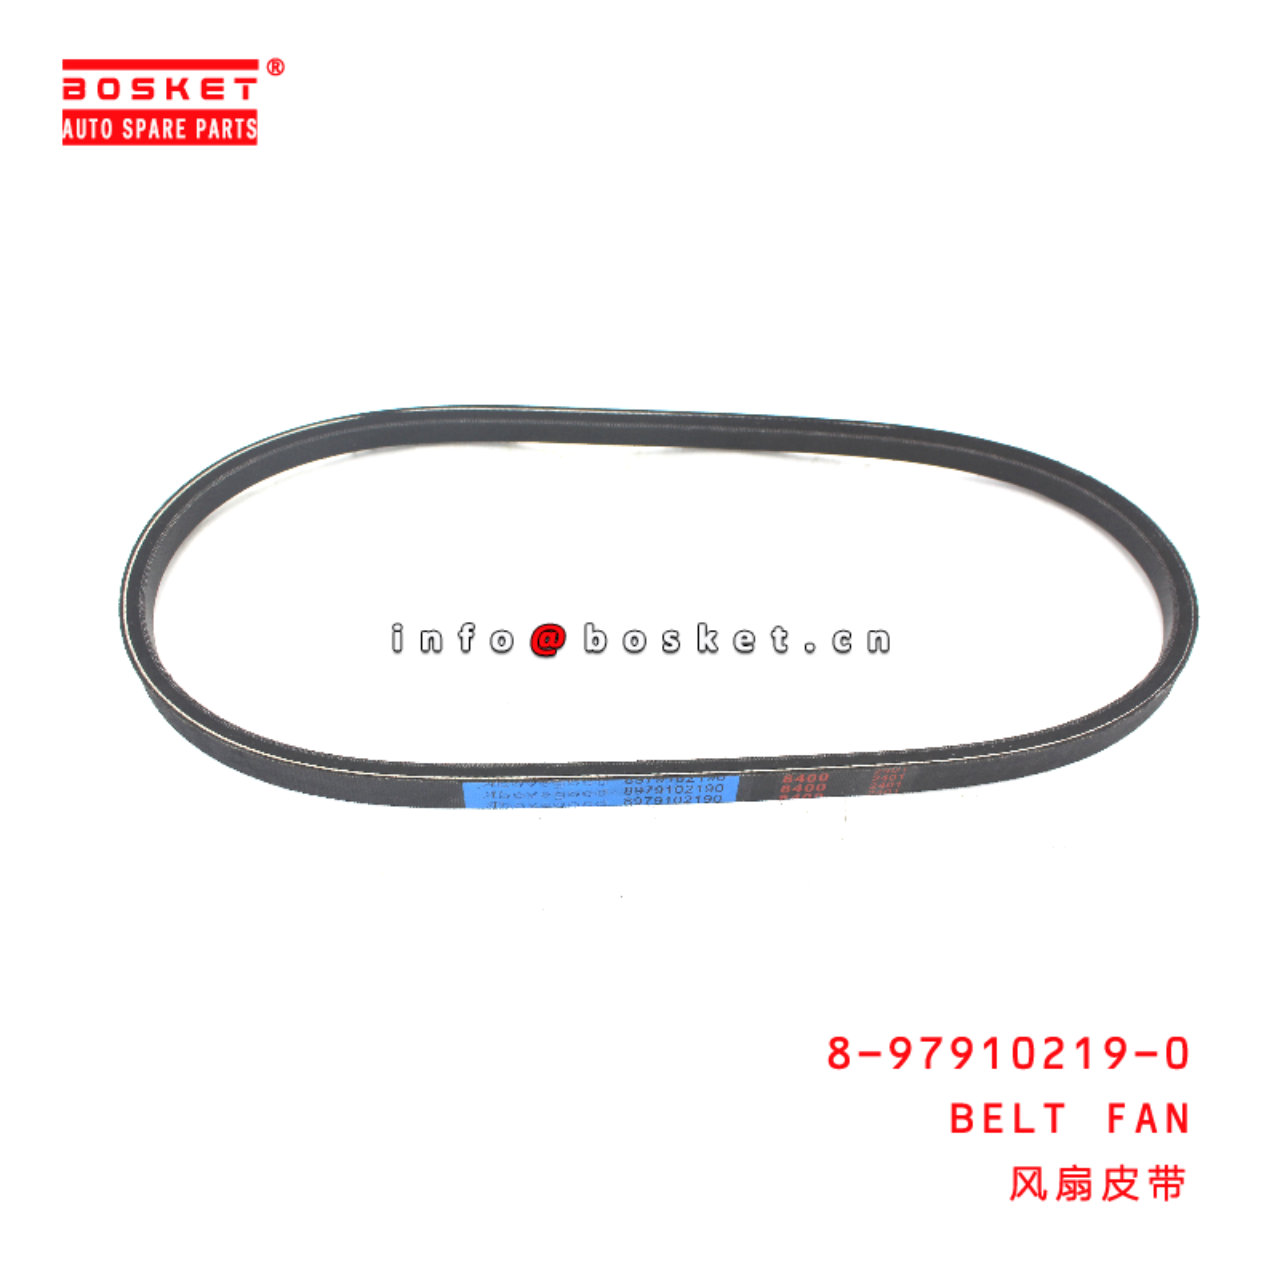 8-97910219-0 Belt Fan suitable for ISUZU   8979102190